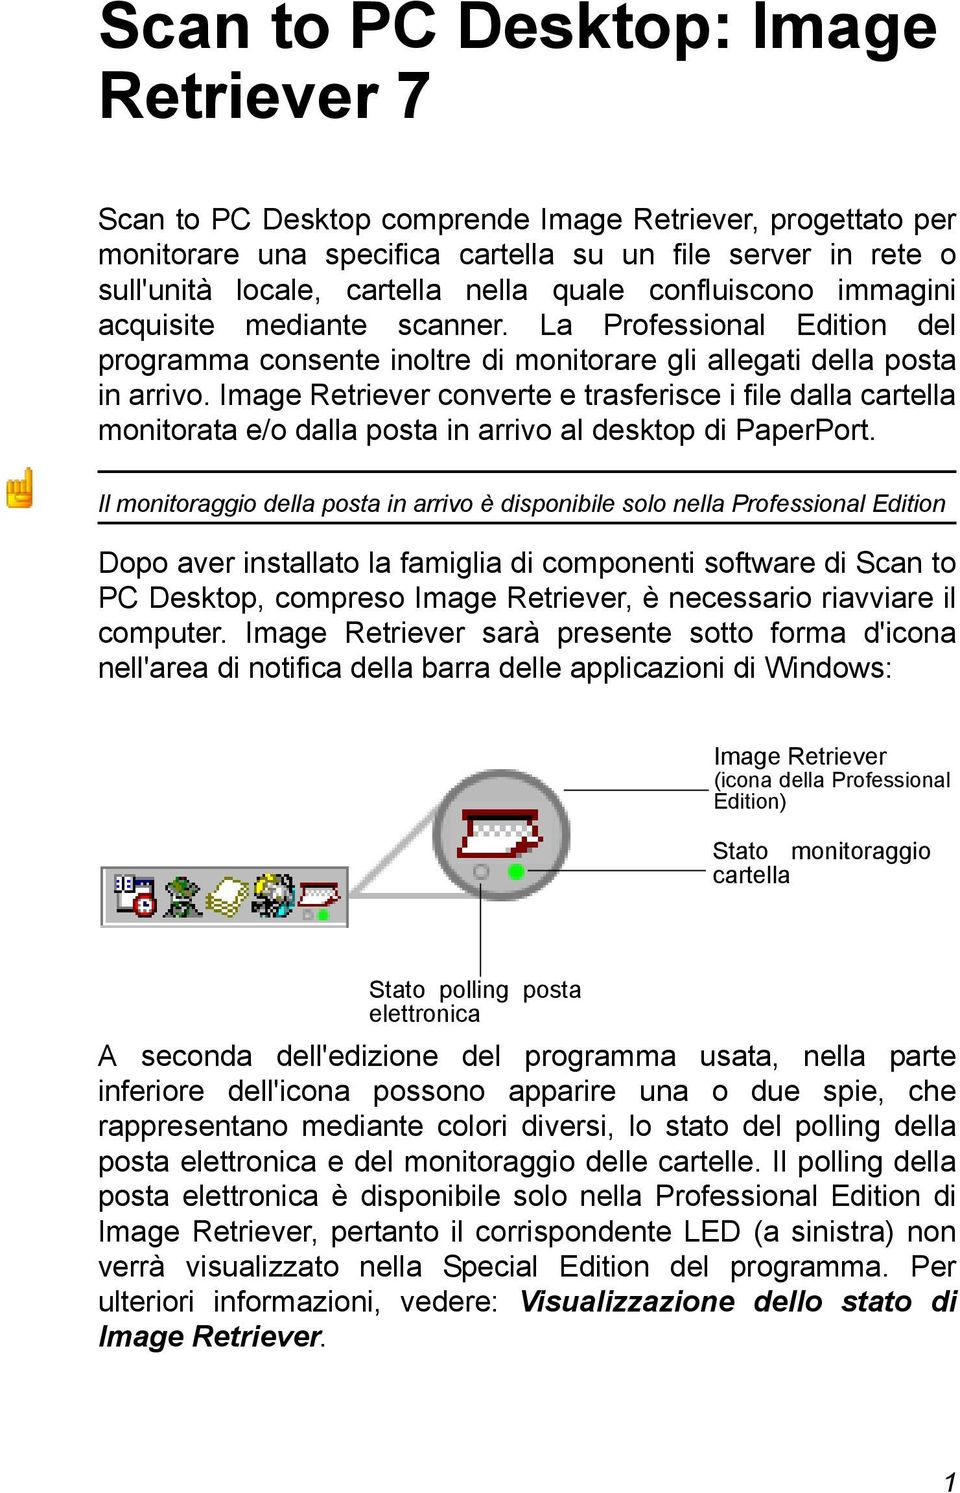 Image Retriever converte e trasferisce i file dalla cartella monitorata e/o dalla posta in arrivo al desktop di PaperPort.